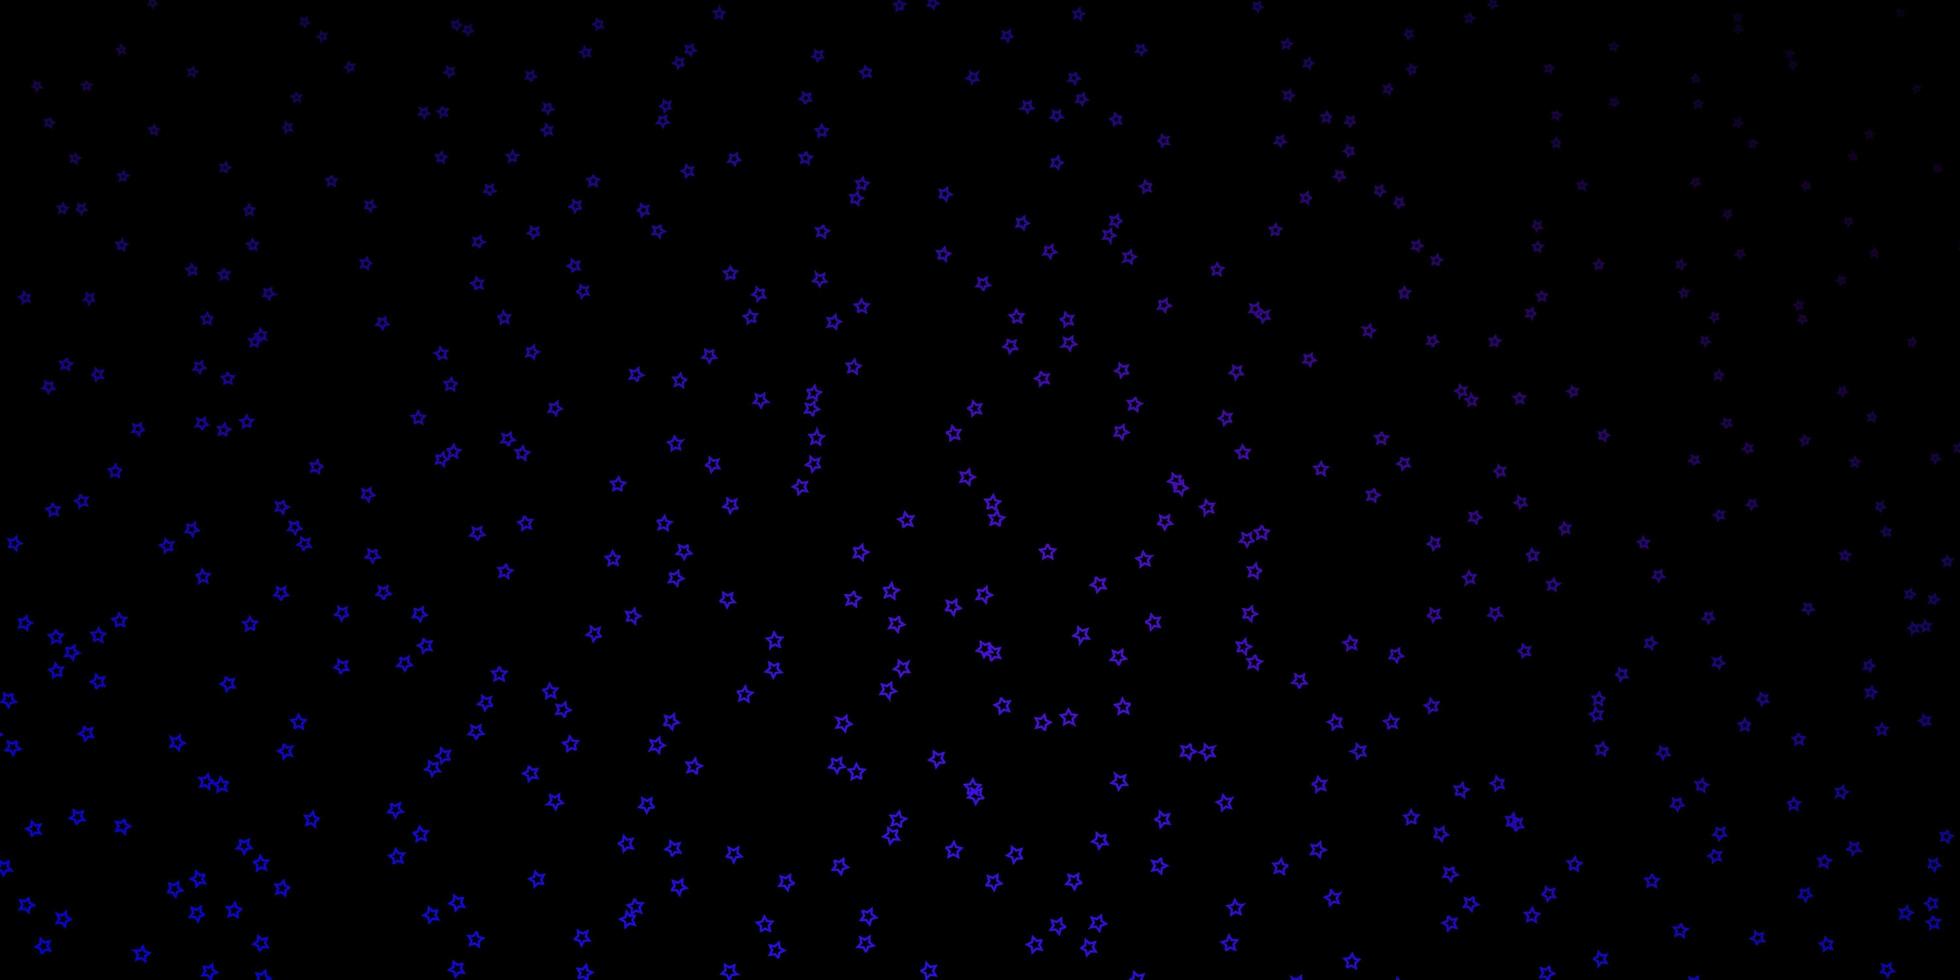 donkerroze blauwe vectortextuur met mooie sterren decoratieve illustratie met sterren op abstract malplaatjepatroon voor websites bestemmingspagina's vector